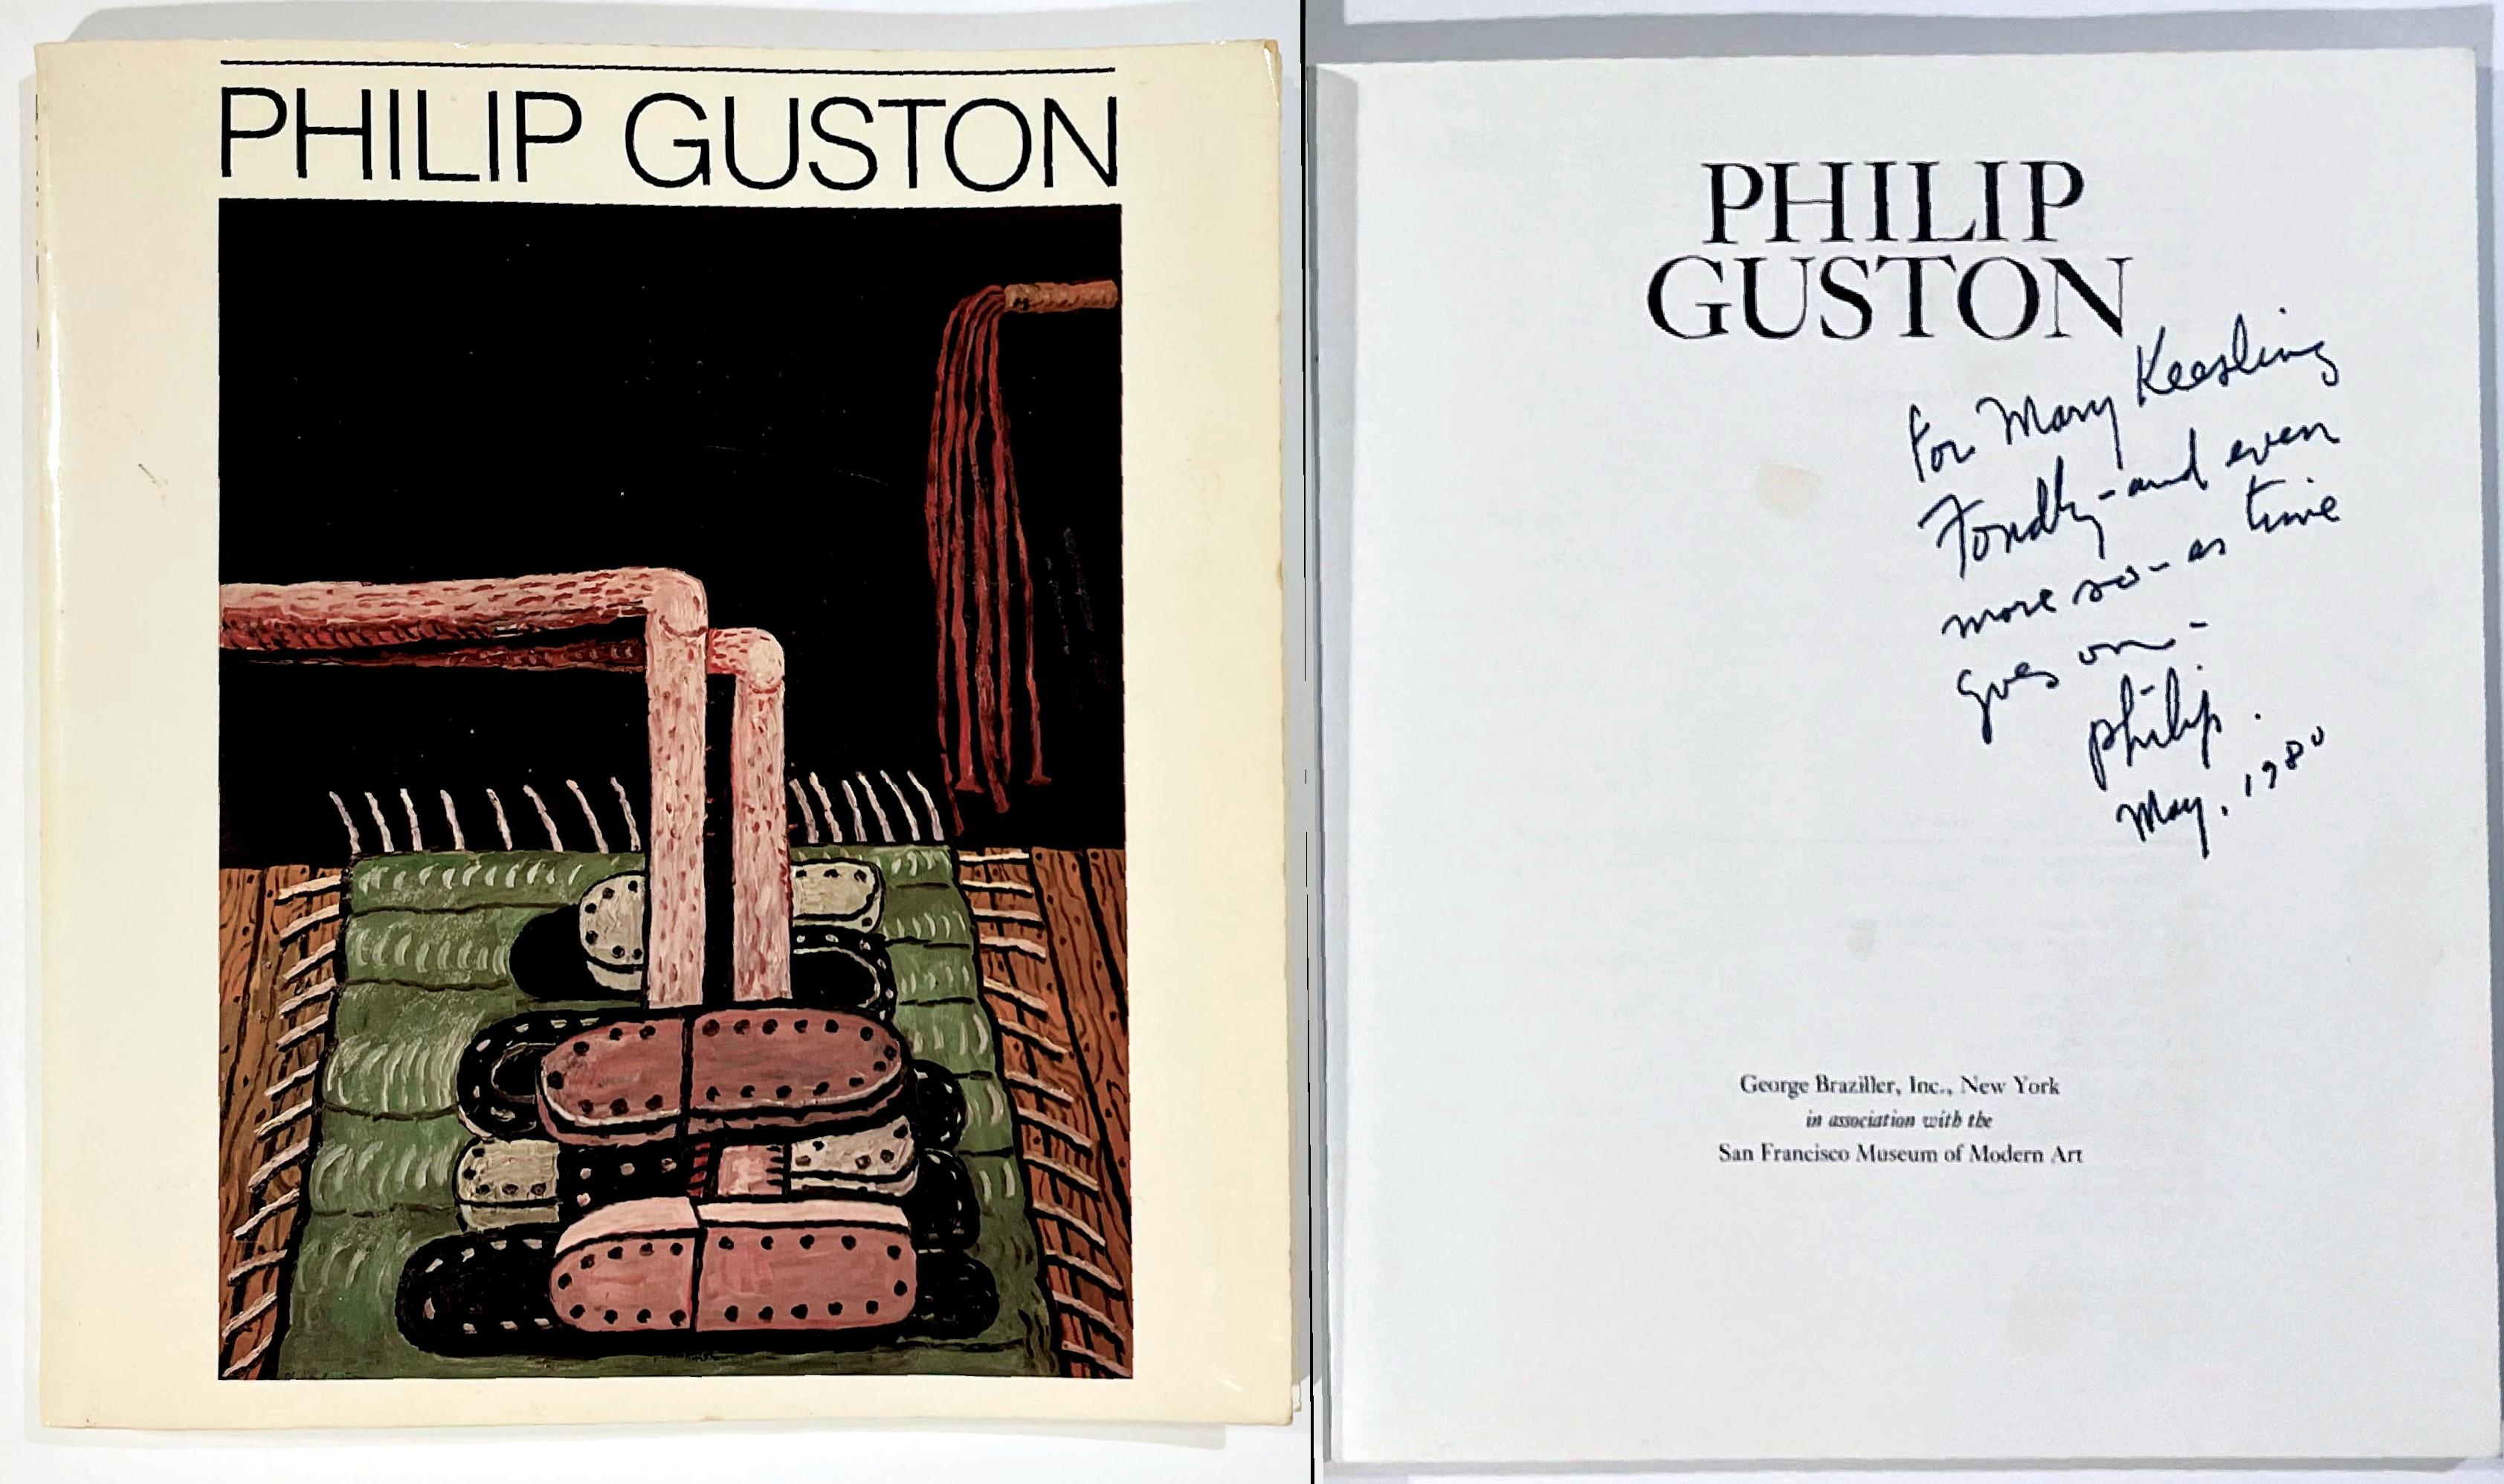 Philip Guston
Monographie: Philip Guston (handschriftlich signiert und beschriftet von Philip Guston für einen bedeutenden Sammler), 1980
Gebundene Monografie (handsigniert, beschriftet und datiert von Philip Guston an Mary Keesling)
Mit